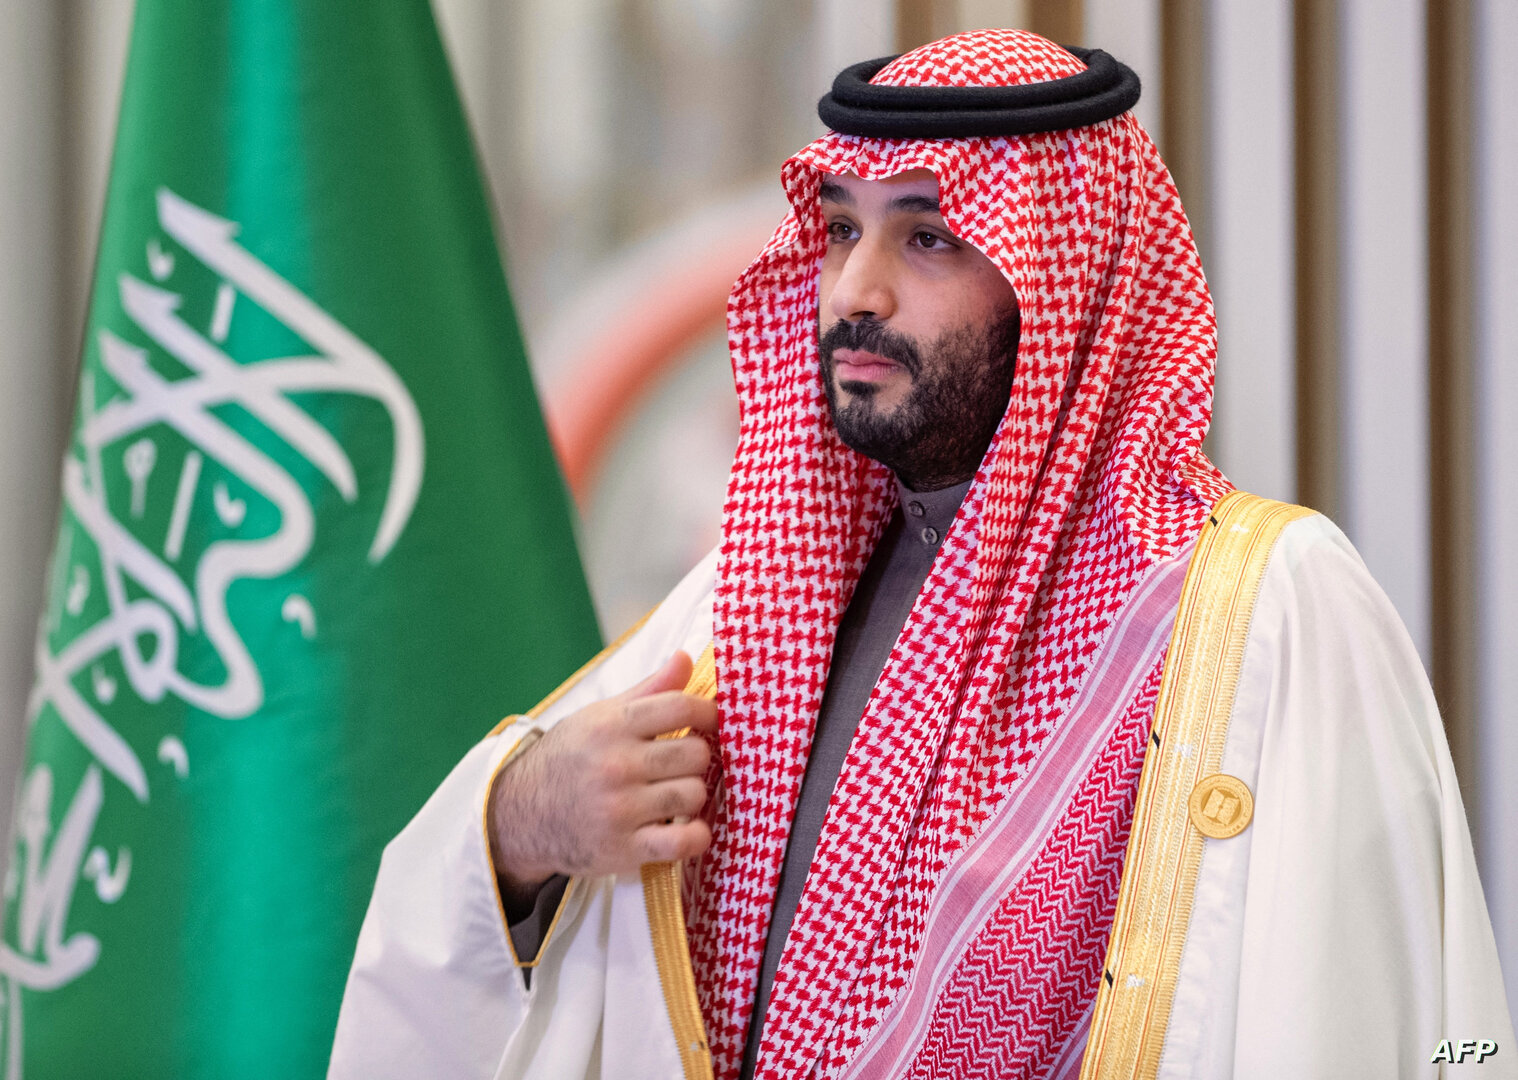 تفاعل كبير مع مقتنيات مكتب ولي العهد السعودي ظهرت خلال اتصال مرئي مهم (فيديو)